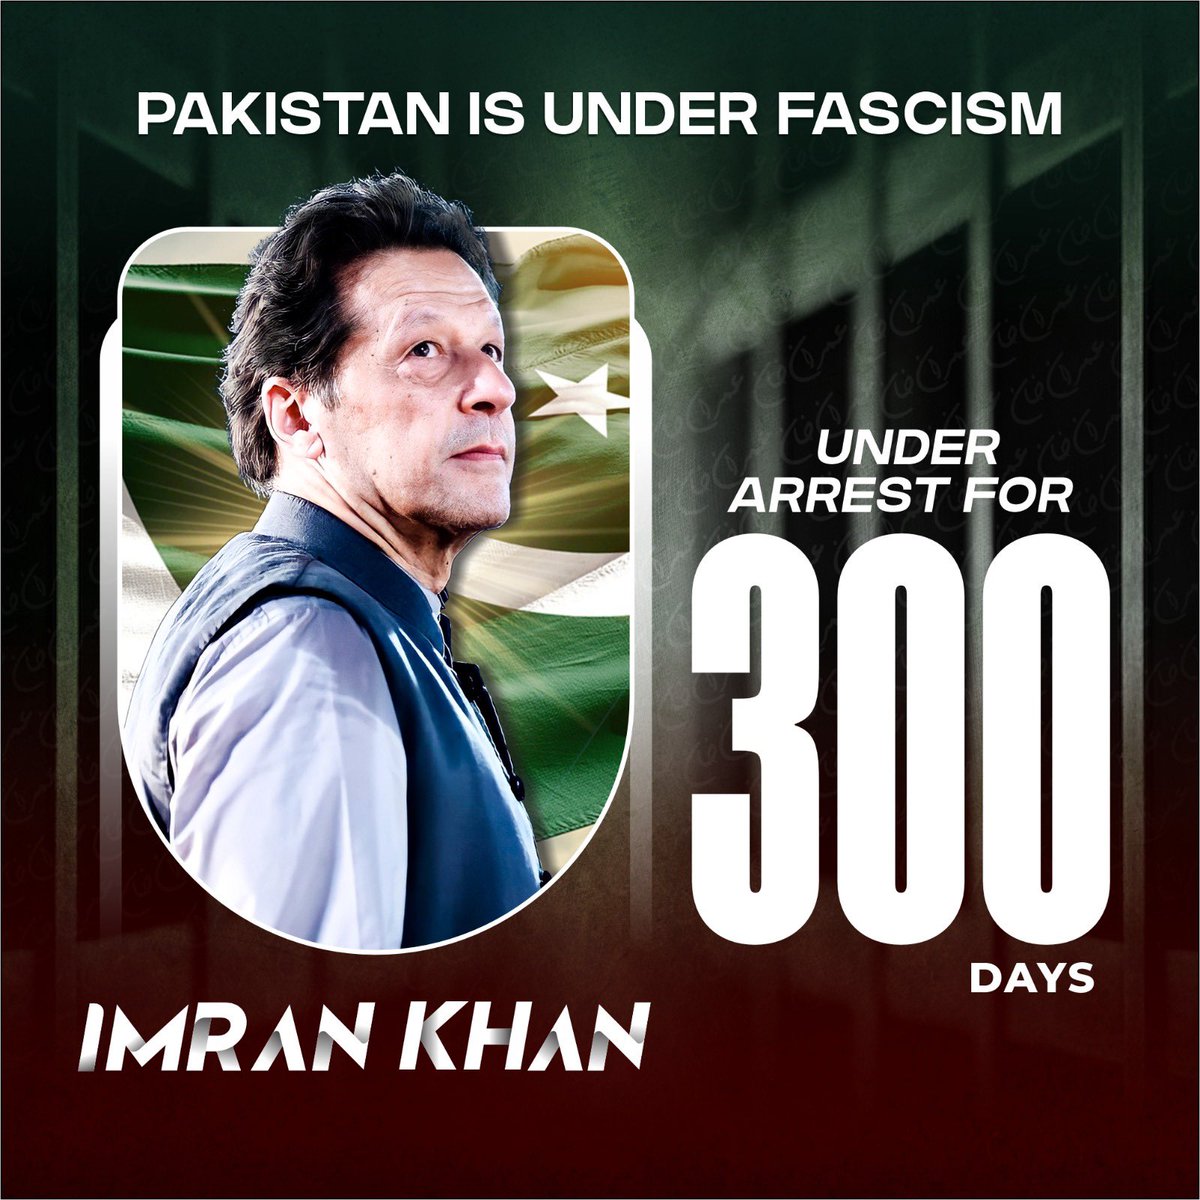 کسی نے شاید نہیں سوچا تھا کہ پاکستان میں ایک عظیم لیڈر کو ۳۰۰ دن کی جیل کاٹنی پڑے گی۔ اب تو ناقدین بھی مان گئے ہیں کہ خان ڈٹ گیا ہے اور اب ان سے بات کیے بغیر ملک میں استحکام نہیں آئے گا اور مزید معیشت خراب ہو سکتی ہے سلام ہے عمران خان کی ہمت اور حوصلے کو! #عزم_و_ہمت_کے_300_دن